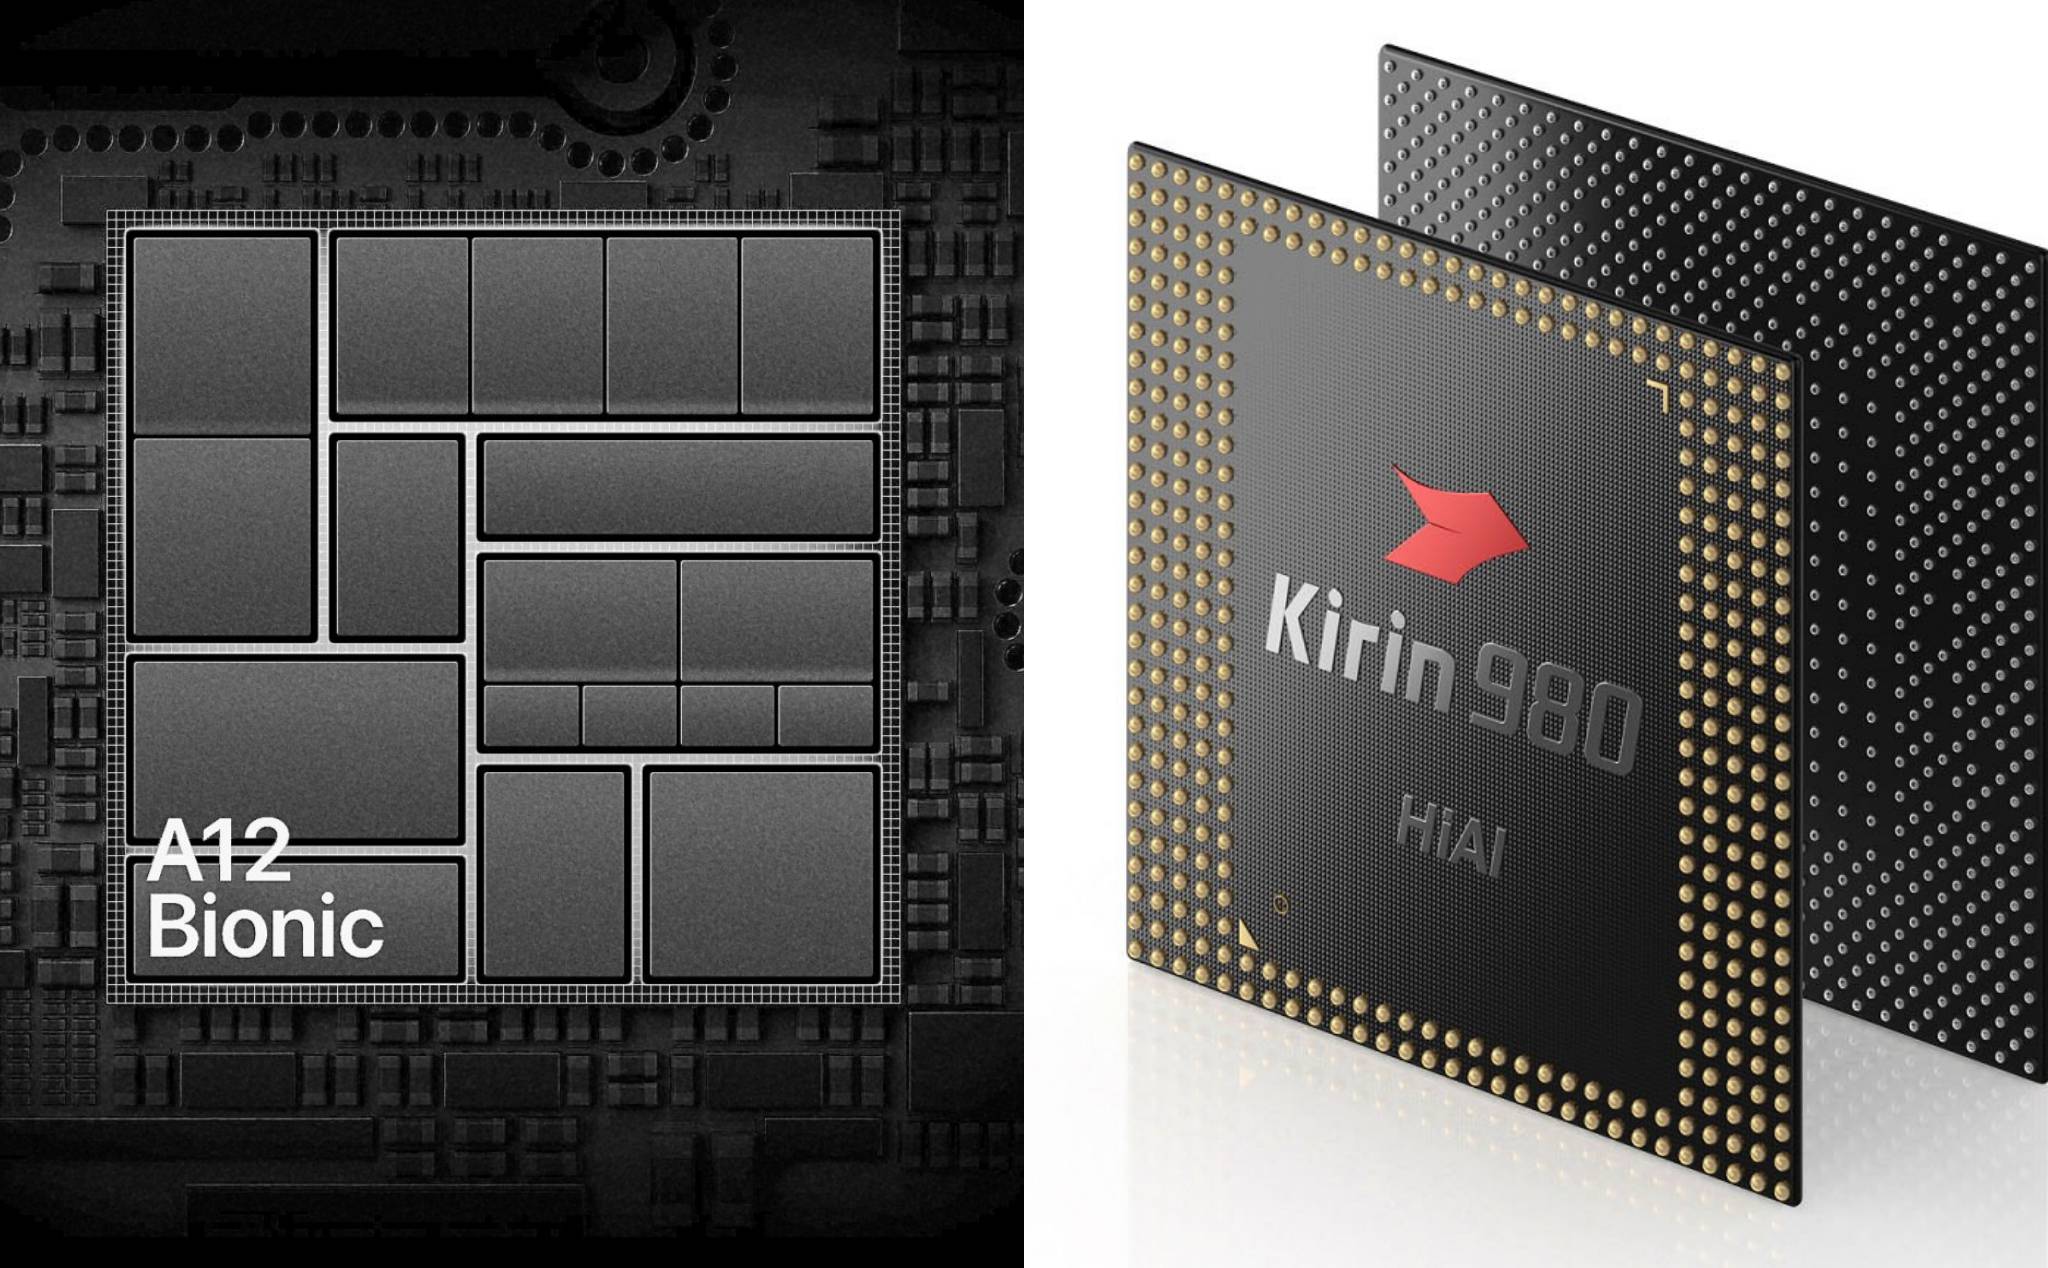 Huawei tuyên bố rằng chíp Kirin 980 nhanh hơn chíp A12 Bionic của Apple